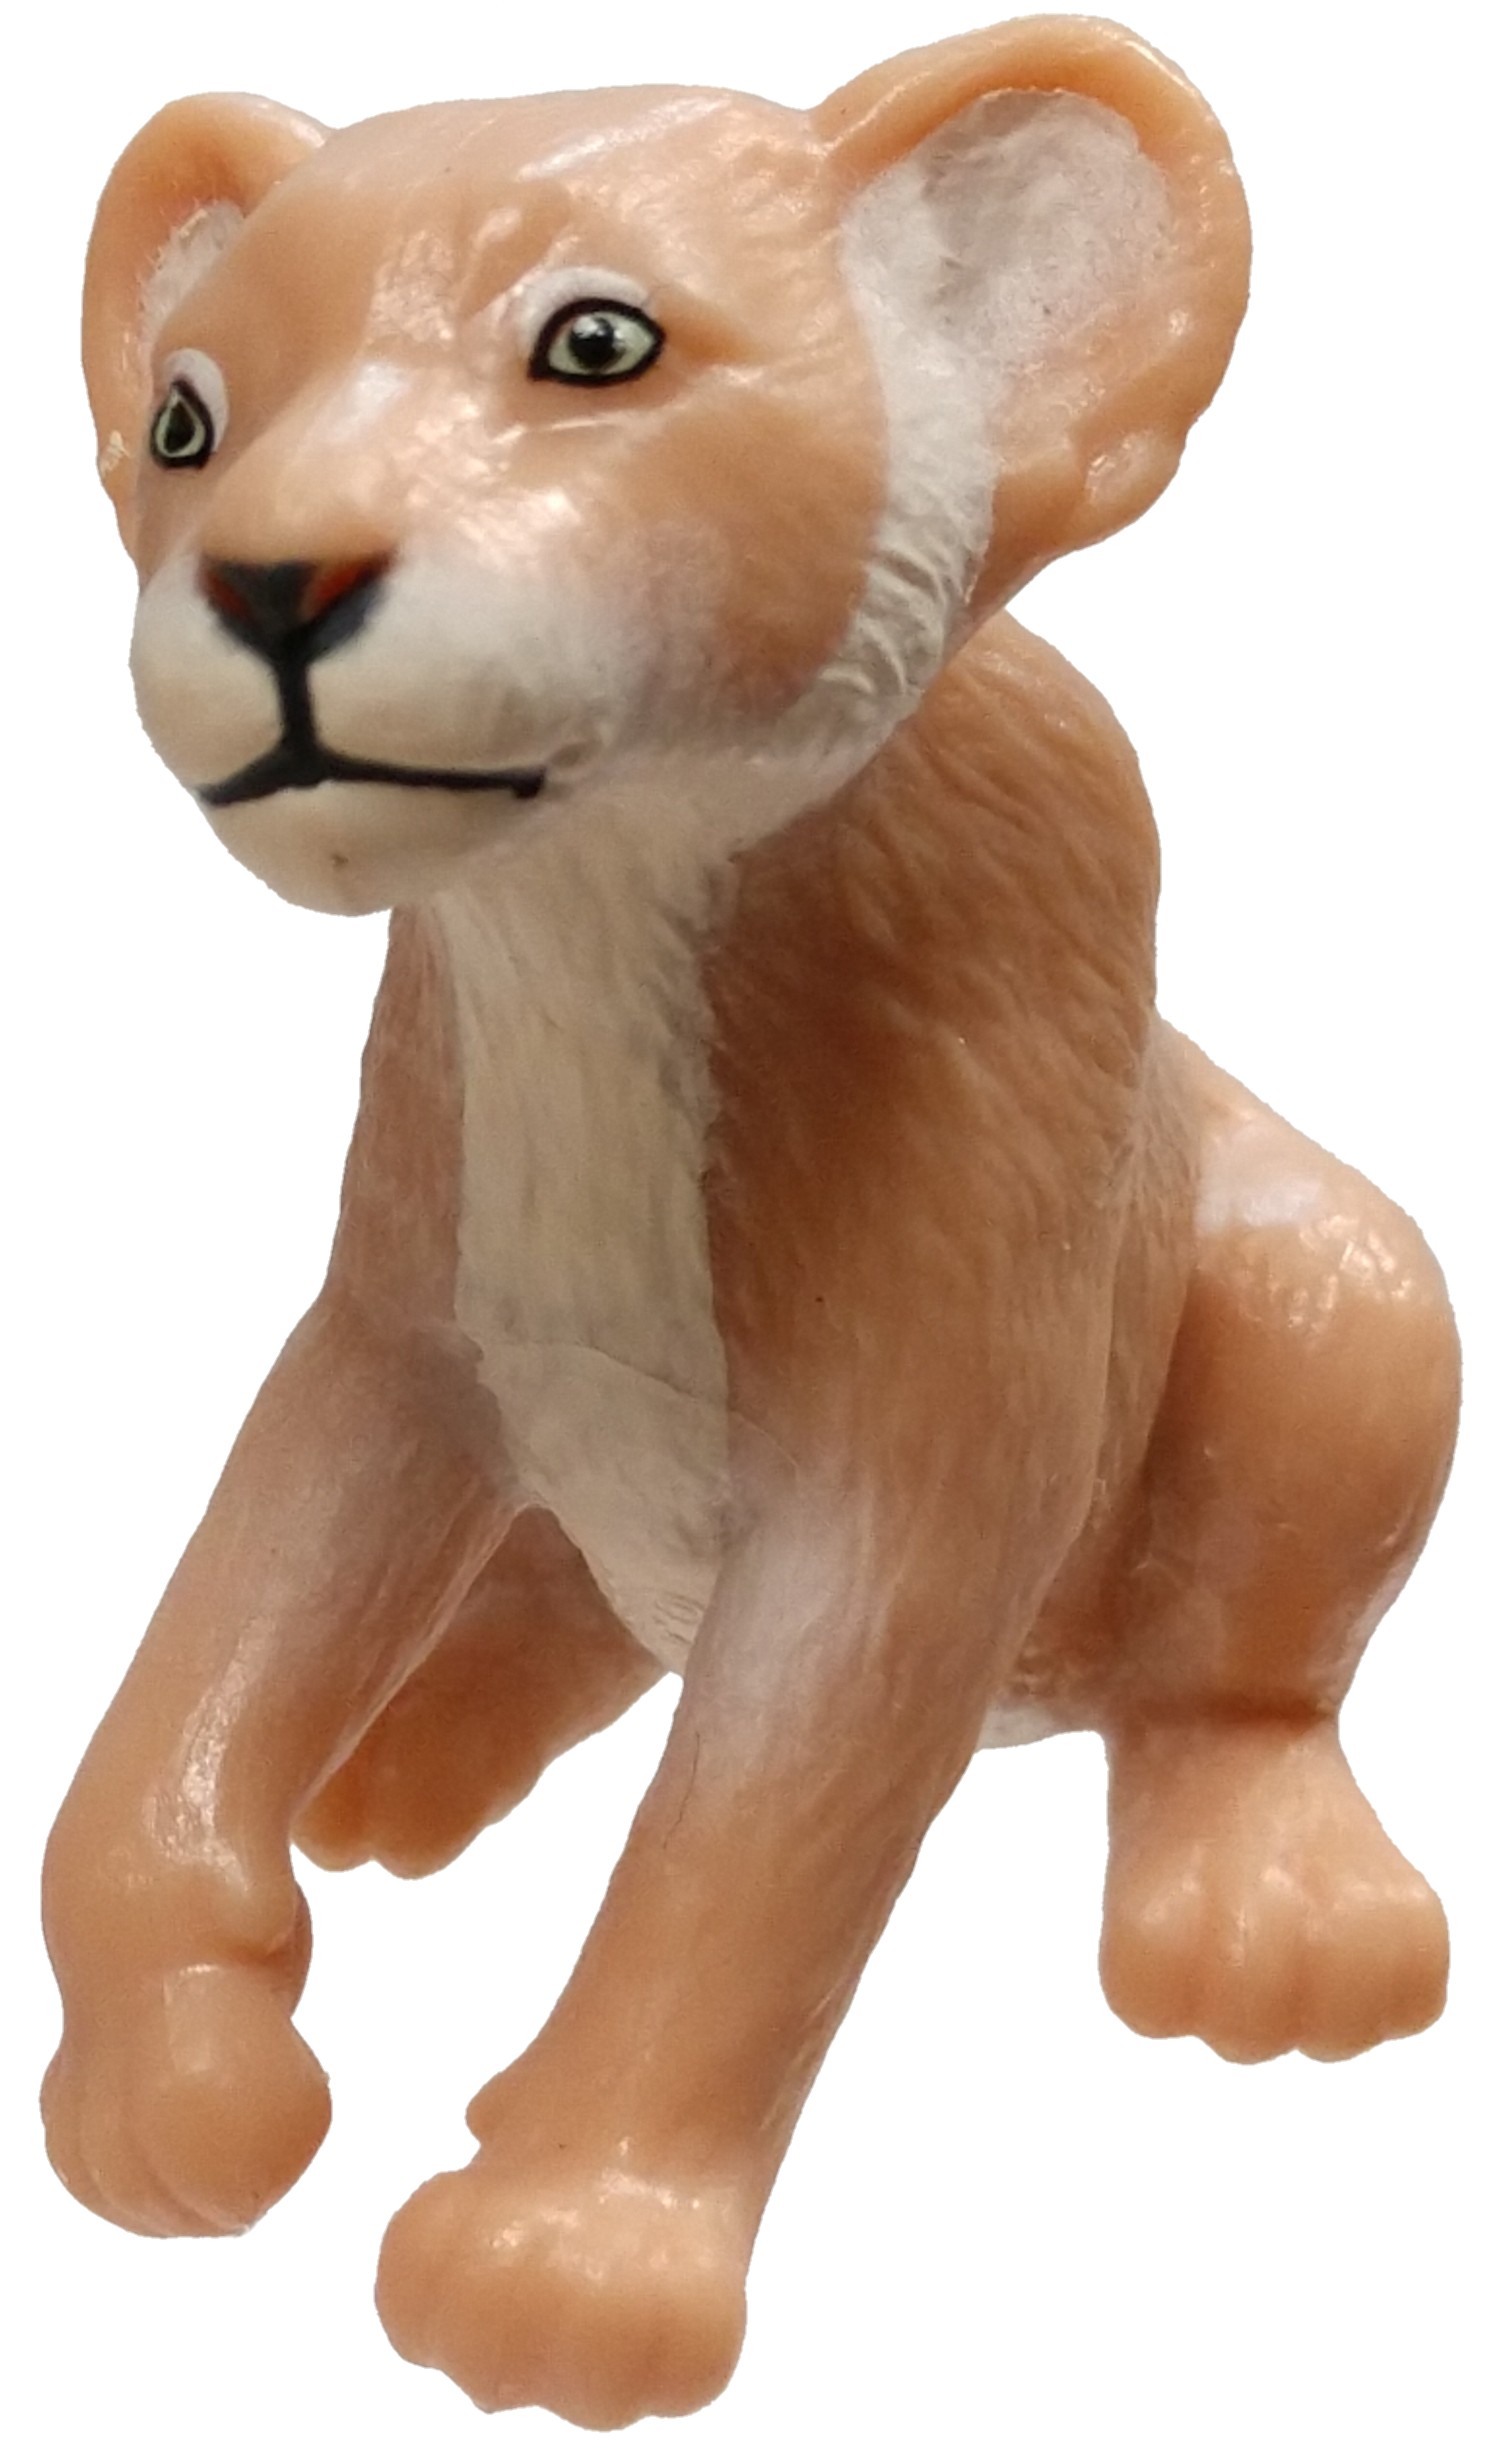 lion king 2019 toys